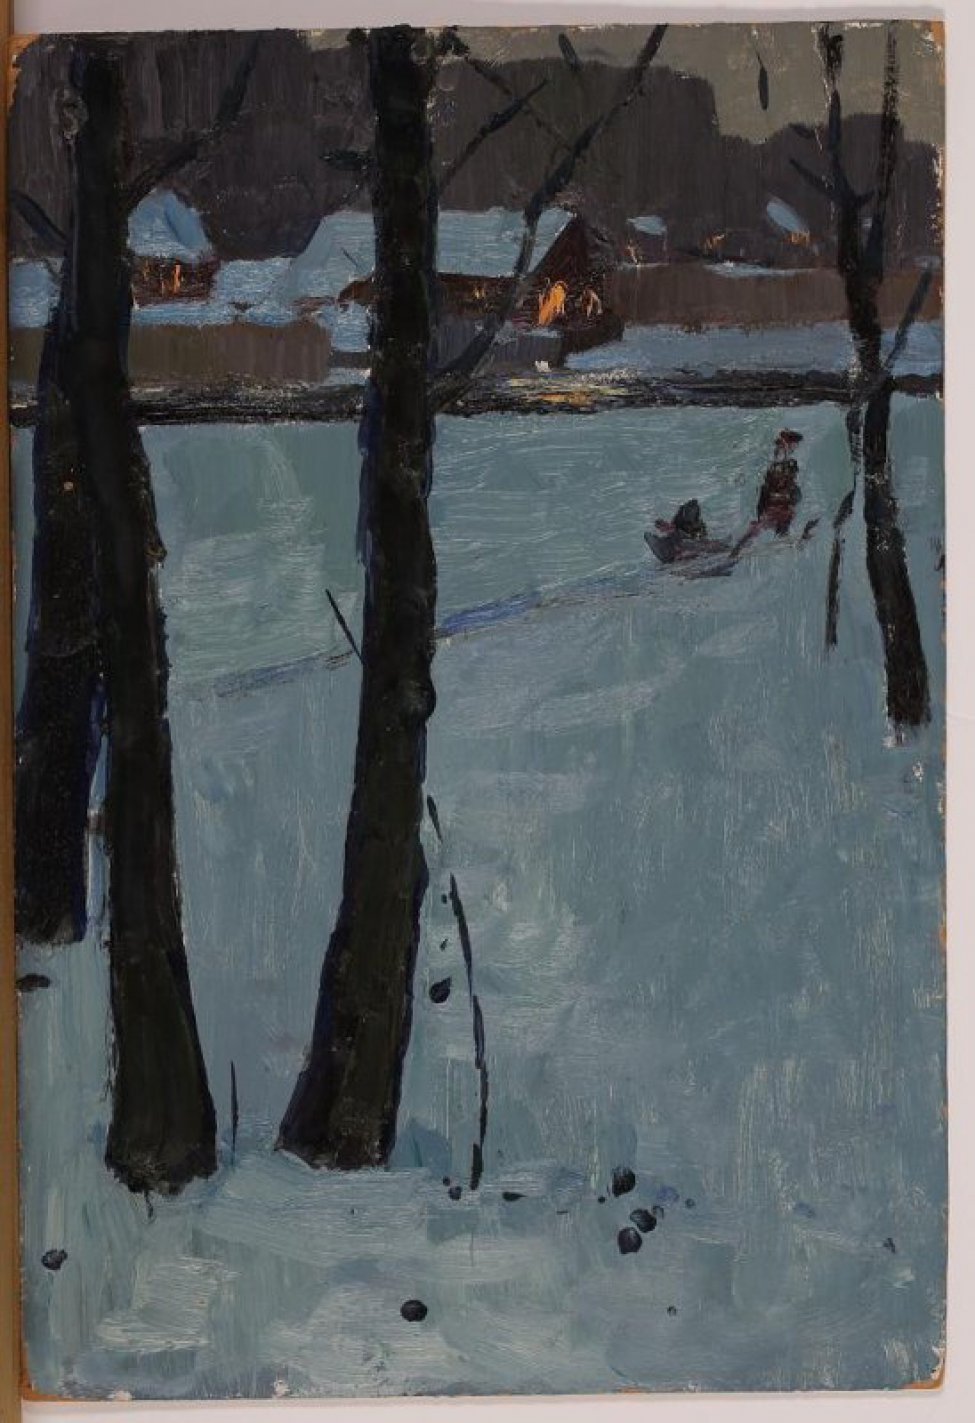 Изображен зимний вечерний пейзаж. На голубом заснеженном пространстве деревья с темными стволами - три слева и одно справа. Справа у дерева намеченная фигура человека, везущего санки. На заднем плане - одноэтажные домики за заборами, с освещенными окнами.